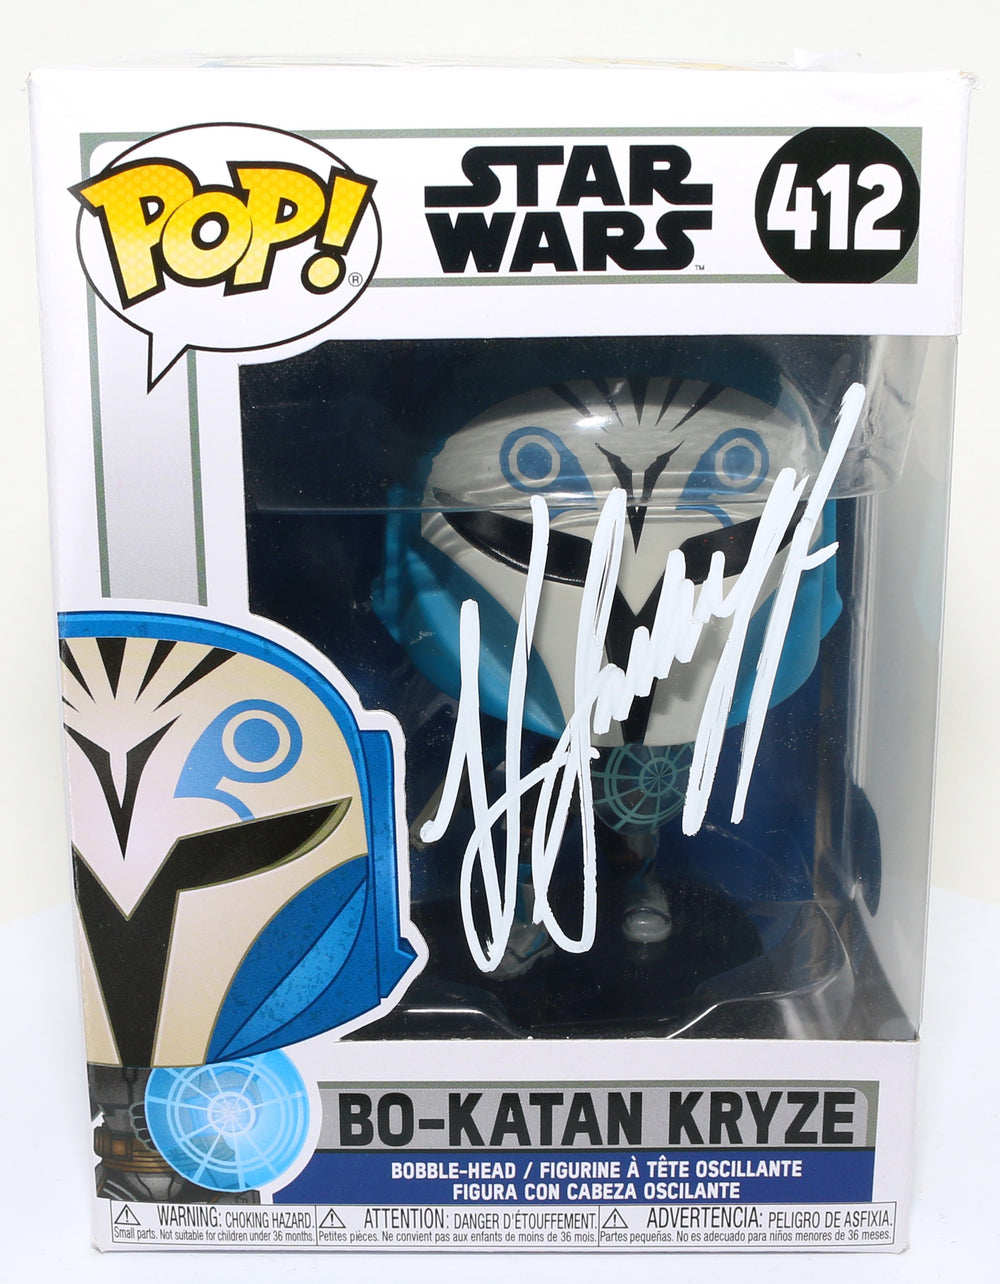 Katee Sackhoff as Bo-Katan Kryze in Star Wars: The Mandalorian (SWAU Witnessed) Signed POP! Funko #412